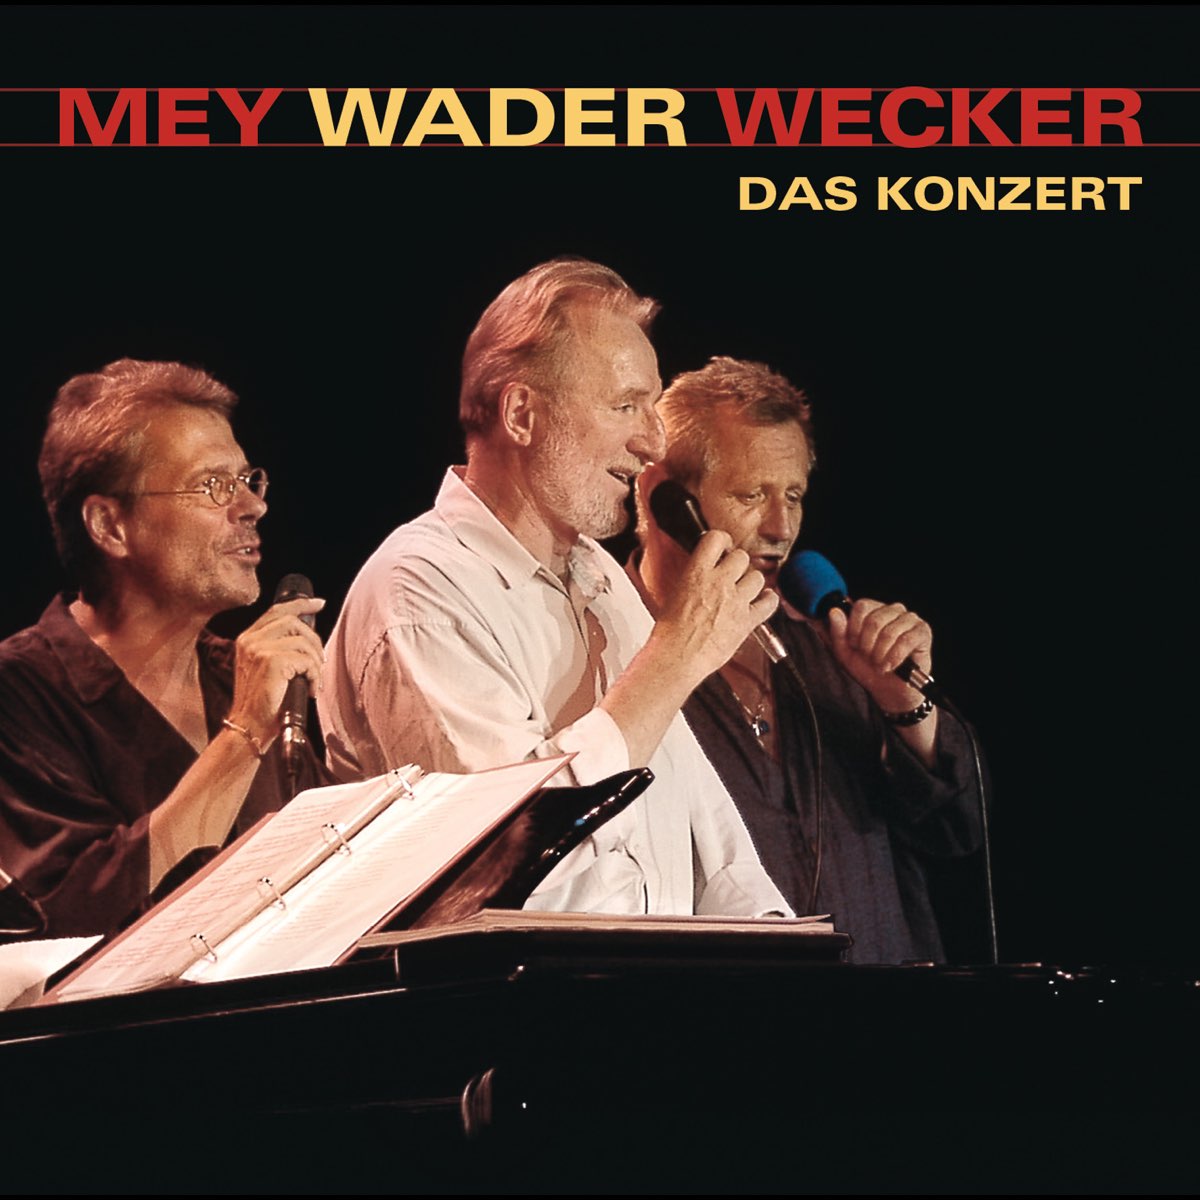 Mey Wader Wecker - Das Konzert (Live)“ von Reinhard Mey, Hannes Wader &  Konstantin Wecker bei Apple Music